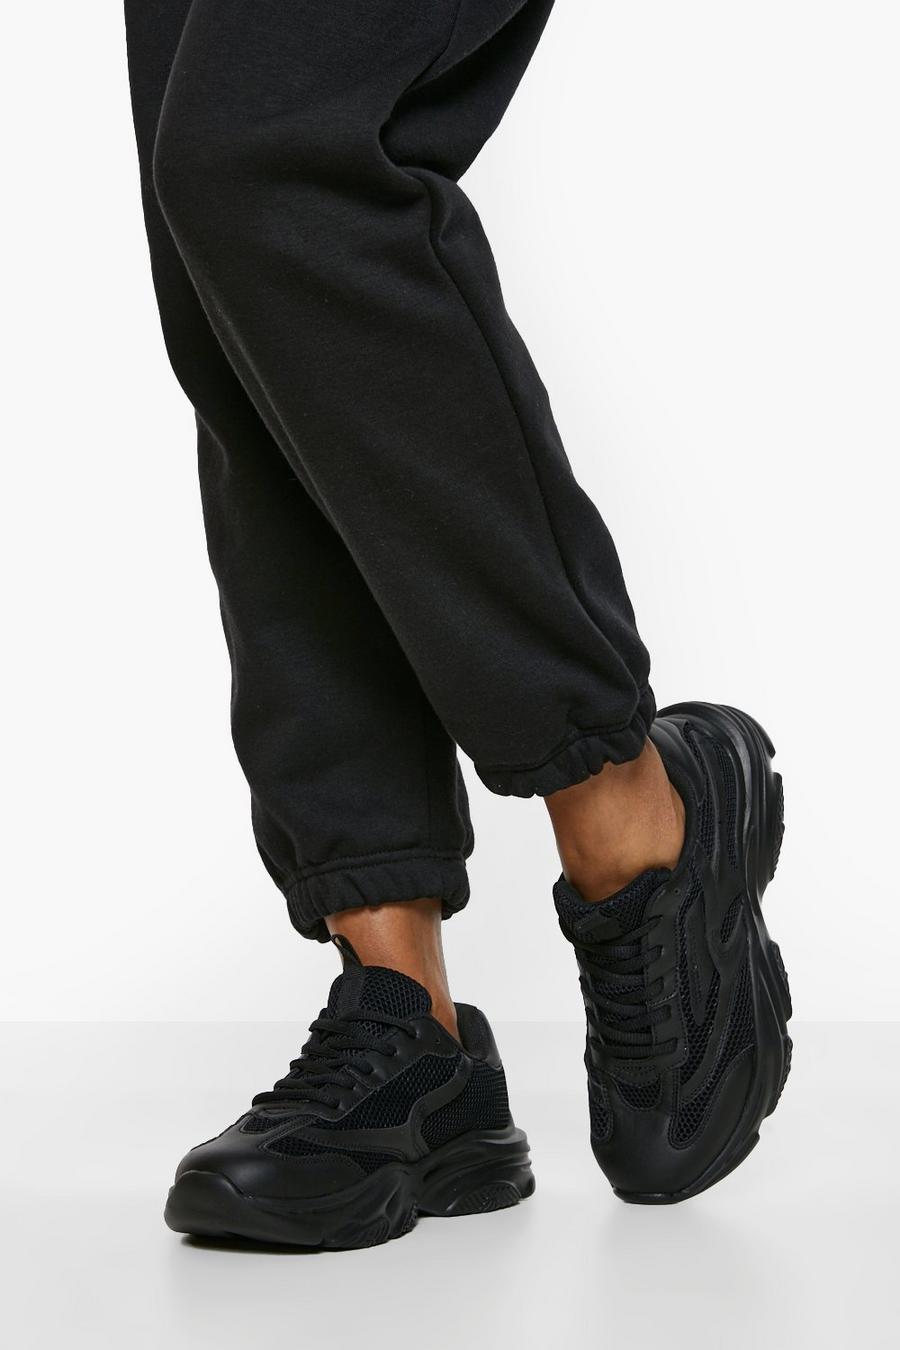 Zapatillas deportivas de holgura ancha gruesas con panel de malla en contraste, Black nero